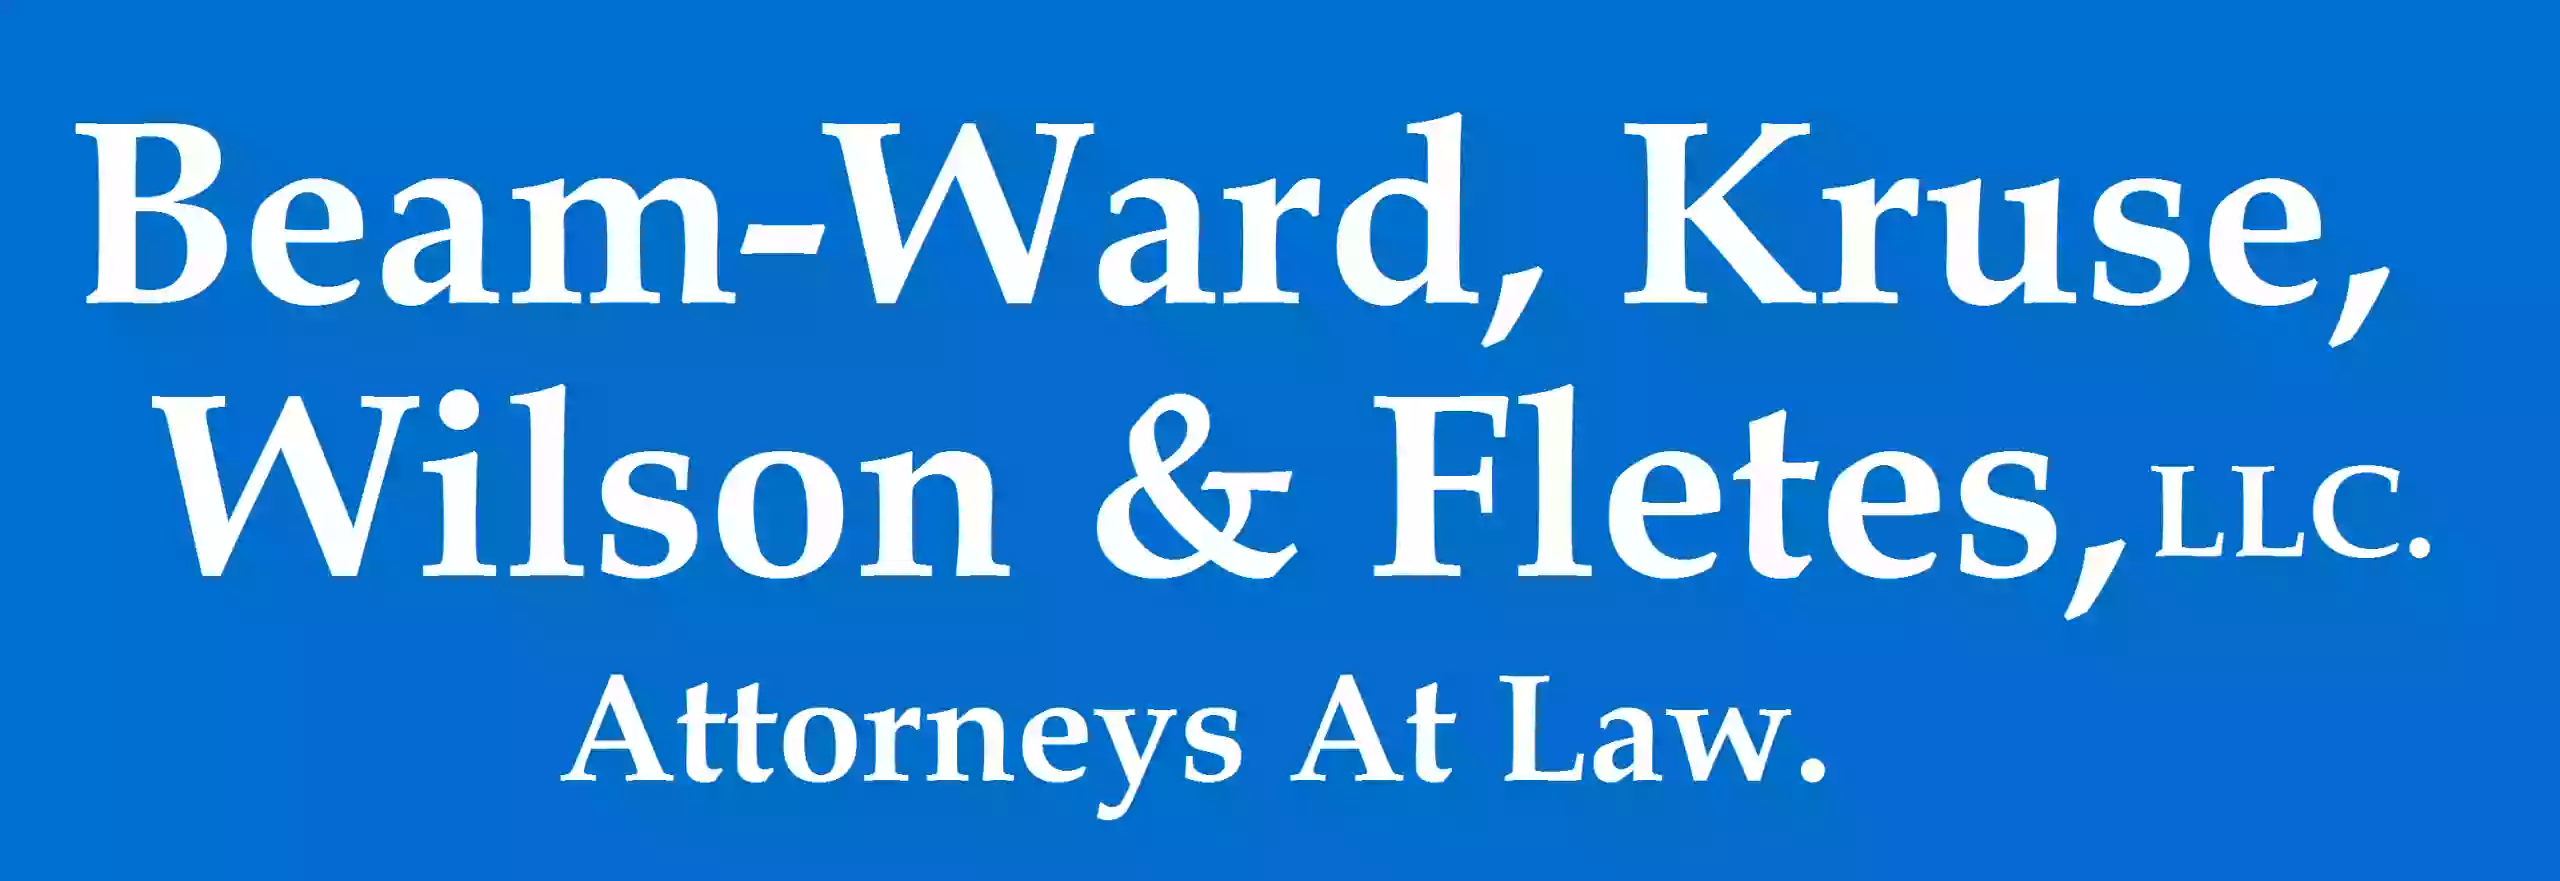 Beam-Ward Kruse Wilson & Fletes, LLC